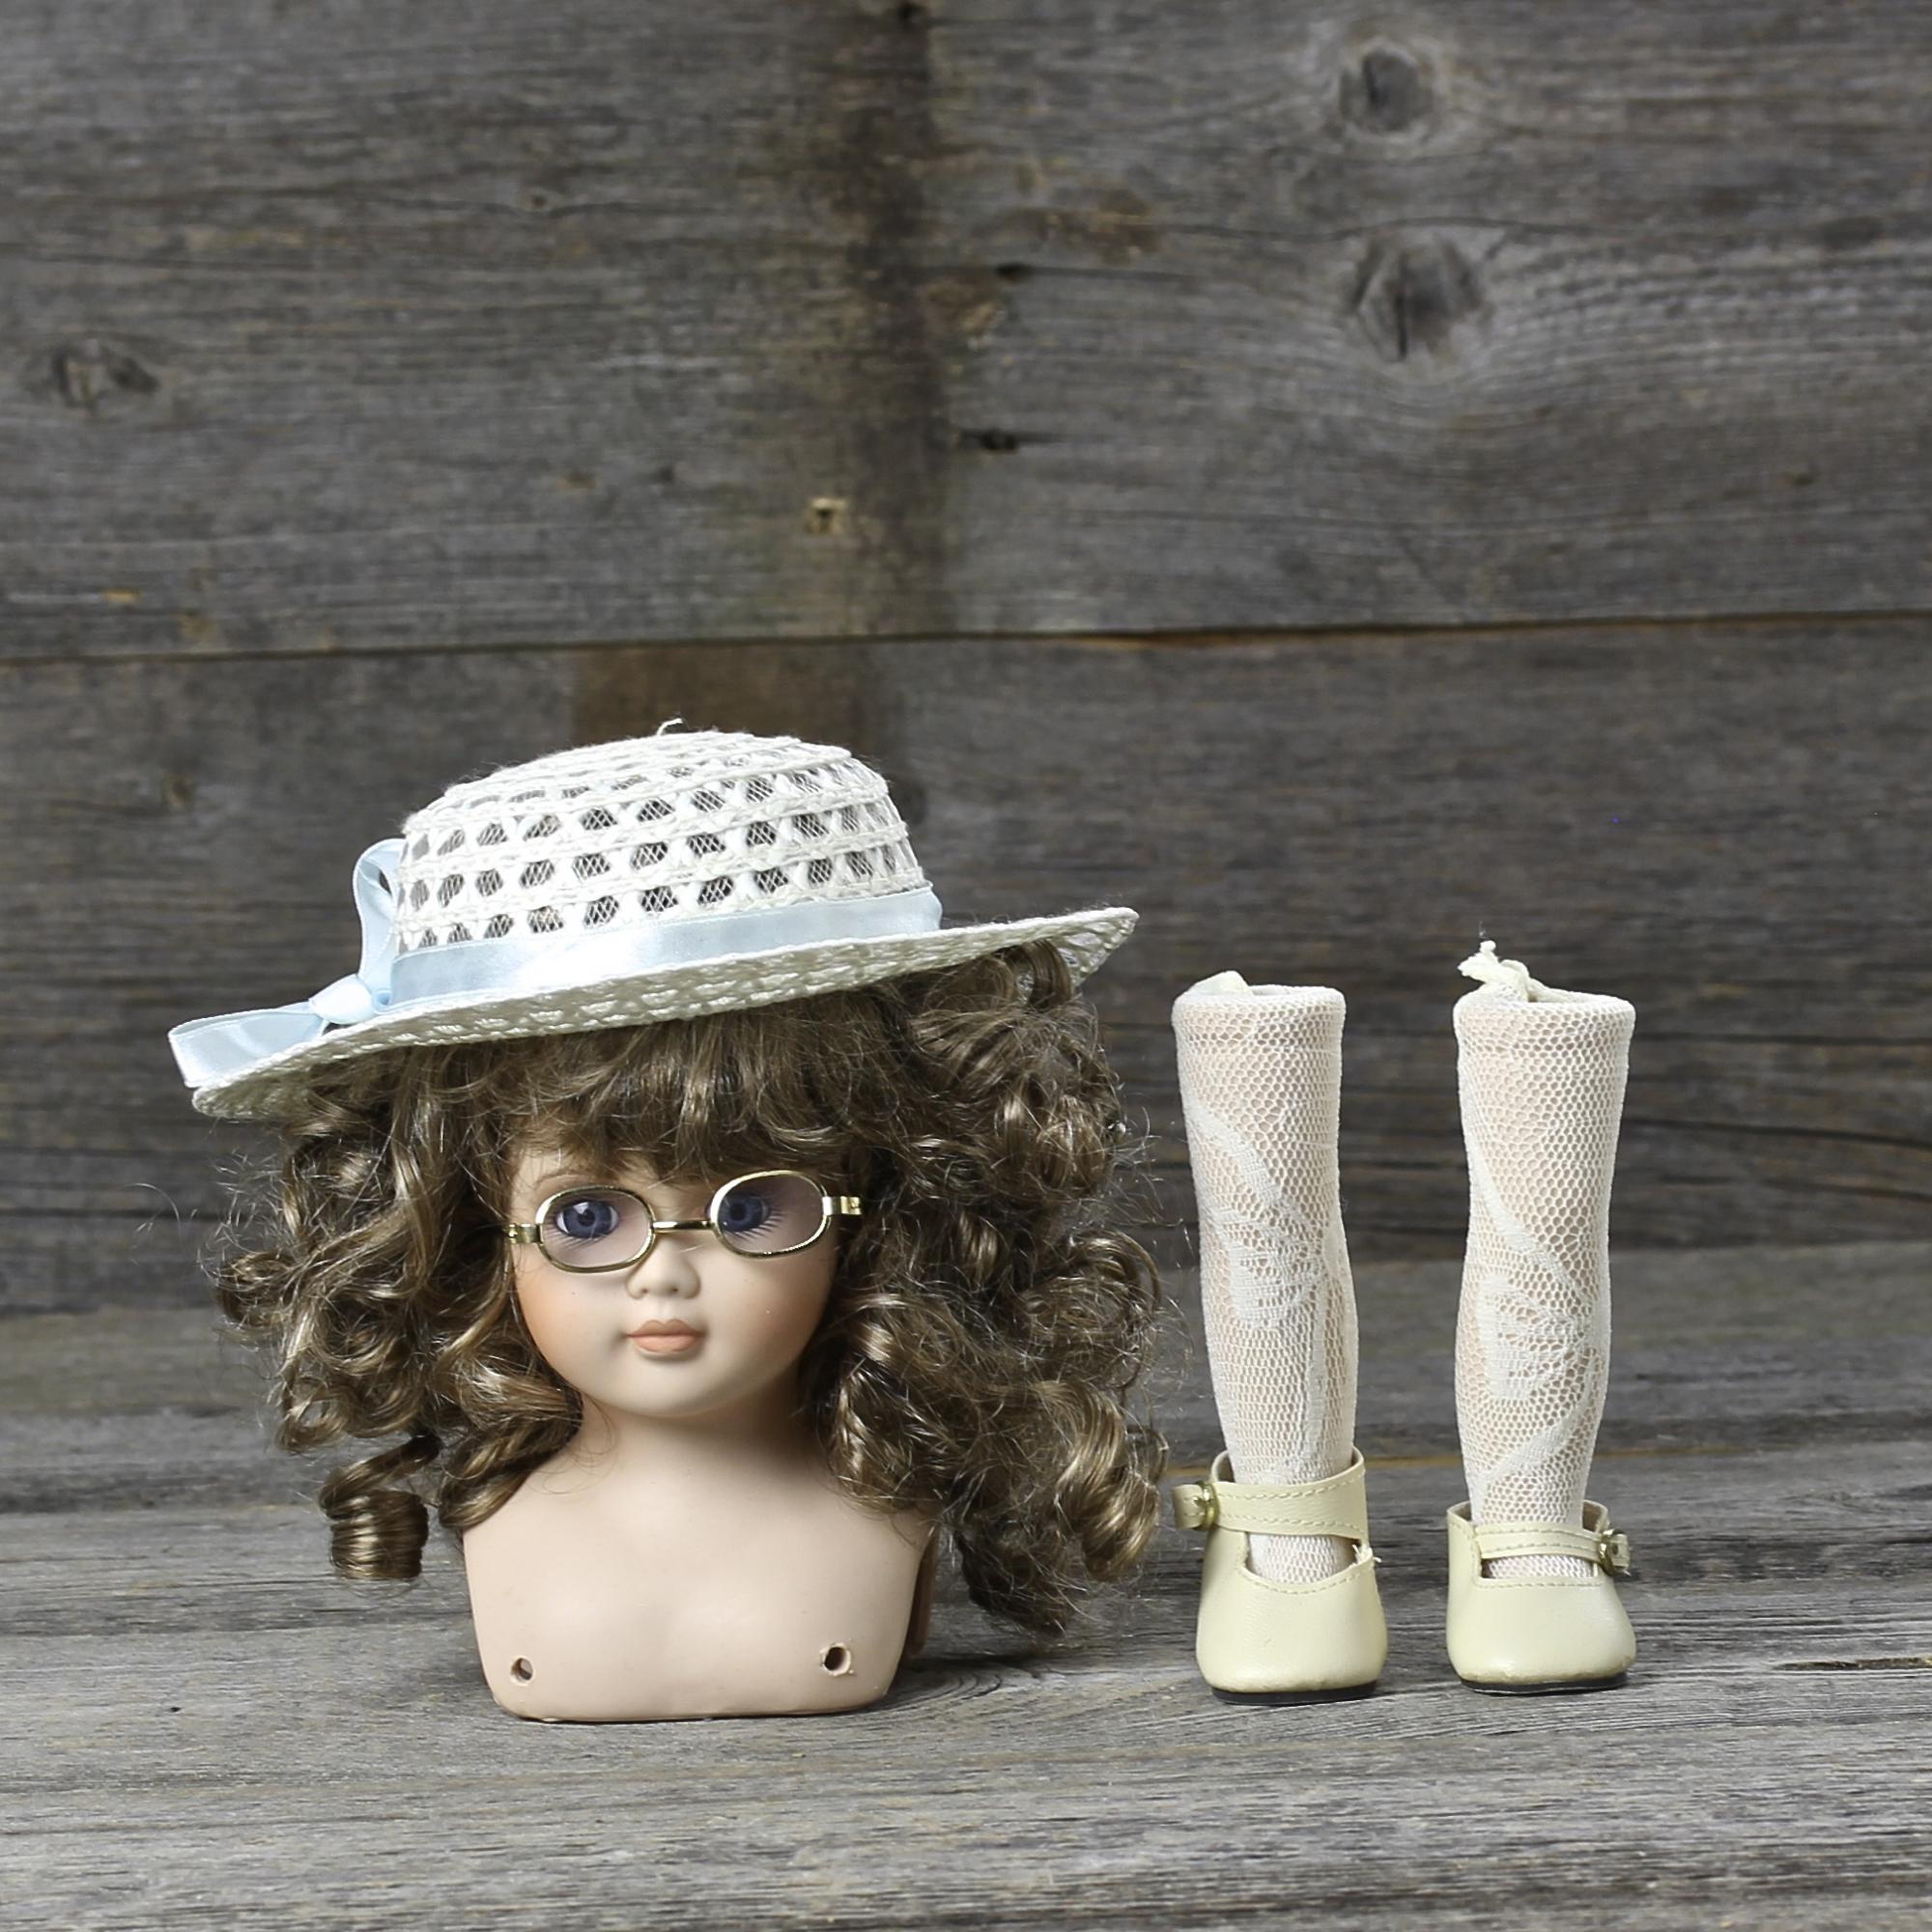 Винтажные детали для куклы с лондонского блошиного рынка Бюст, шляпка, очки, две ножки в туфельках